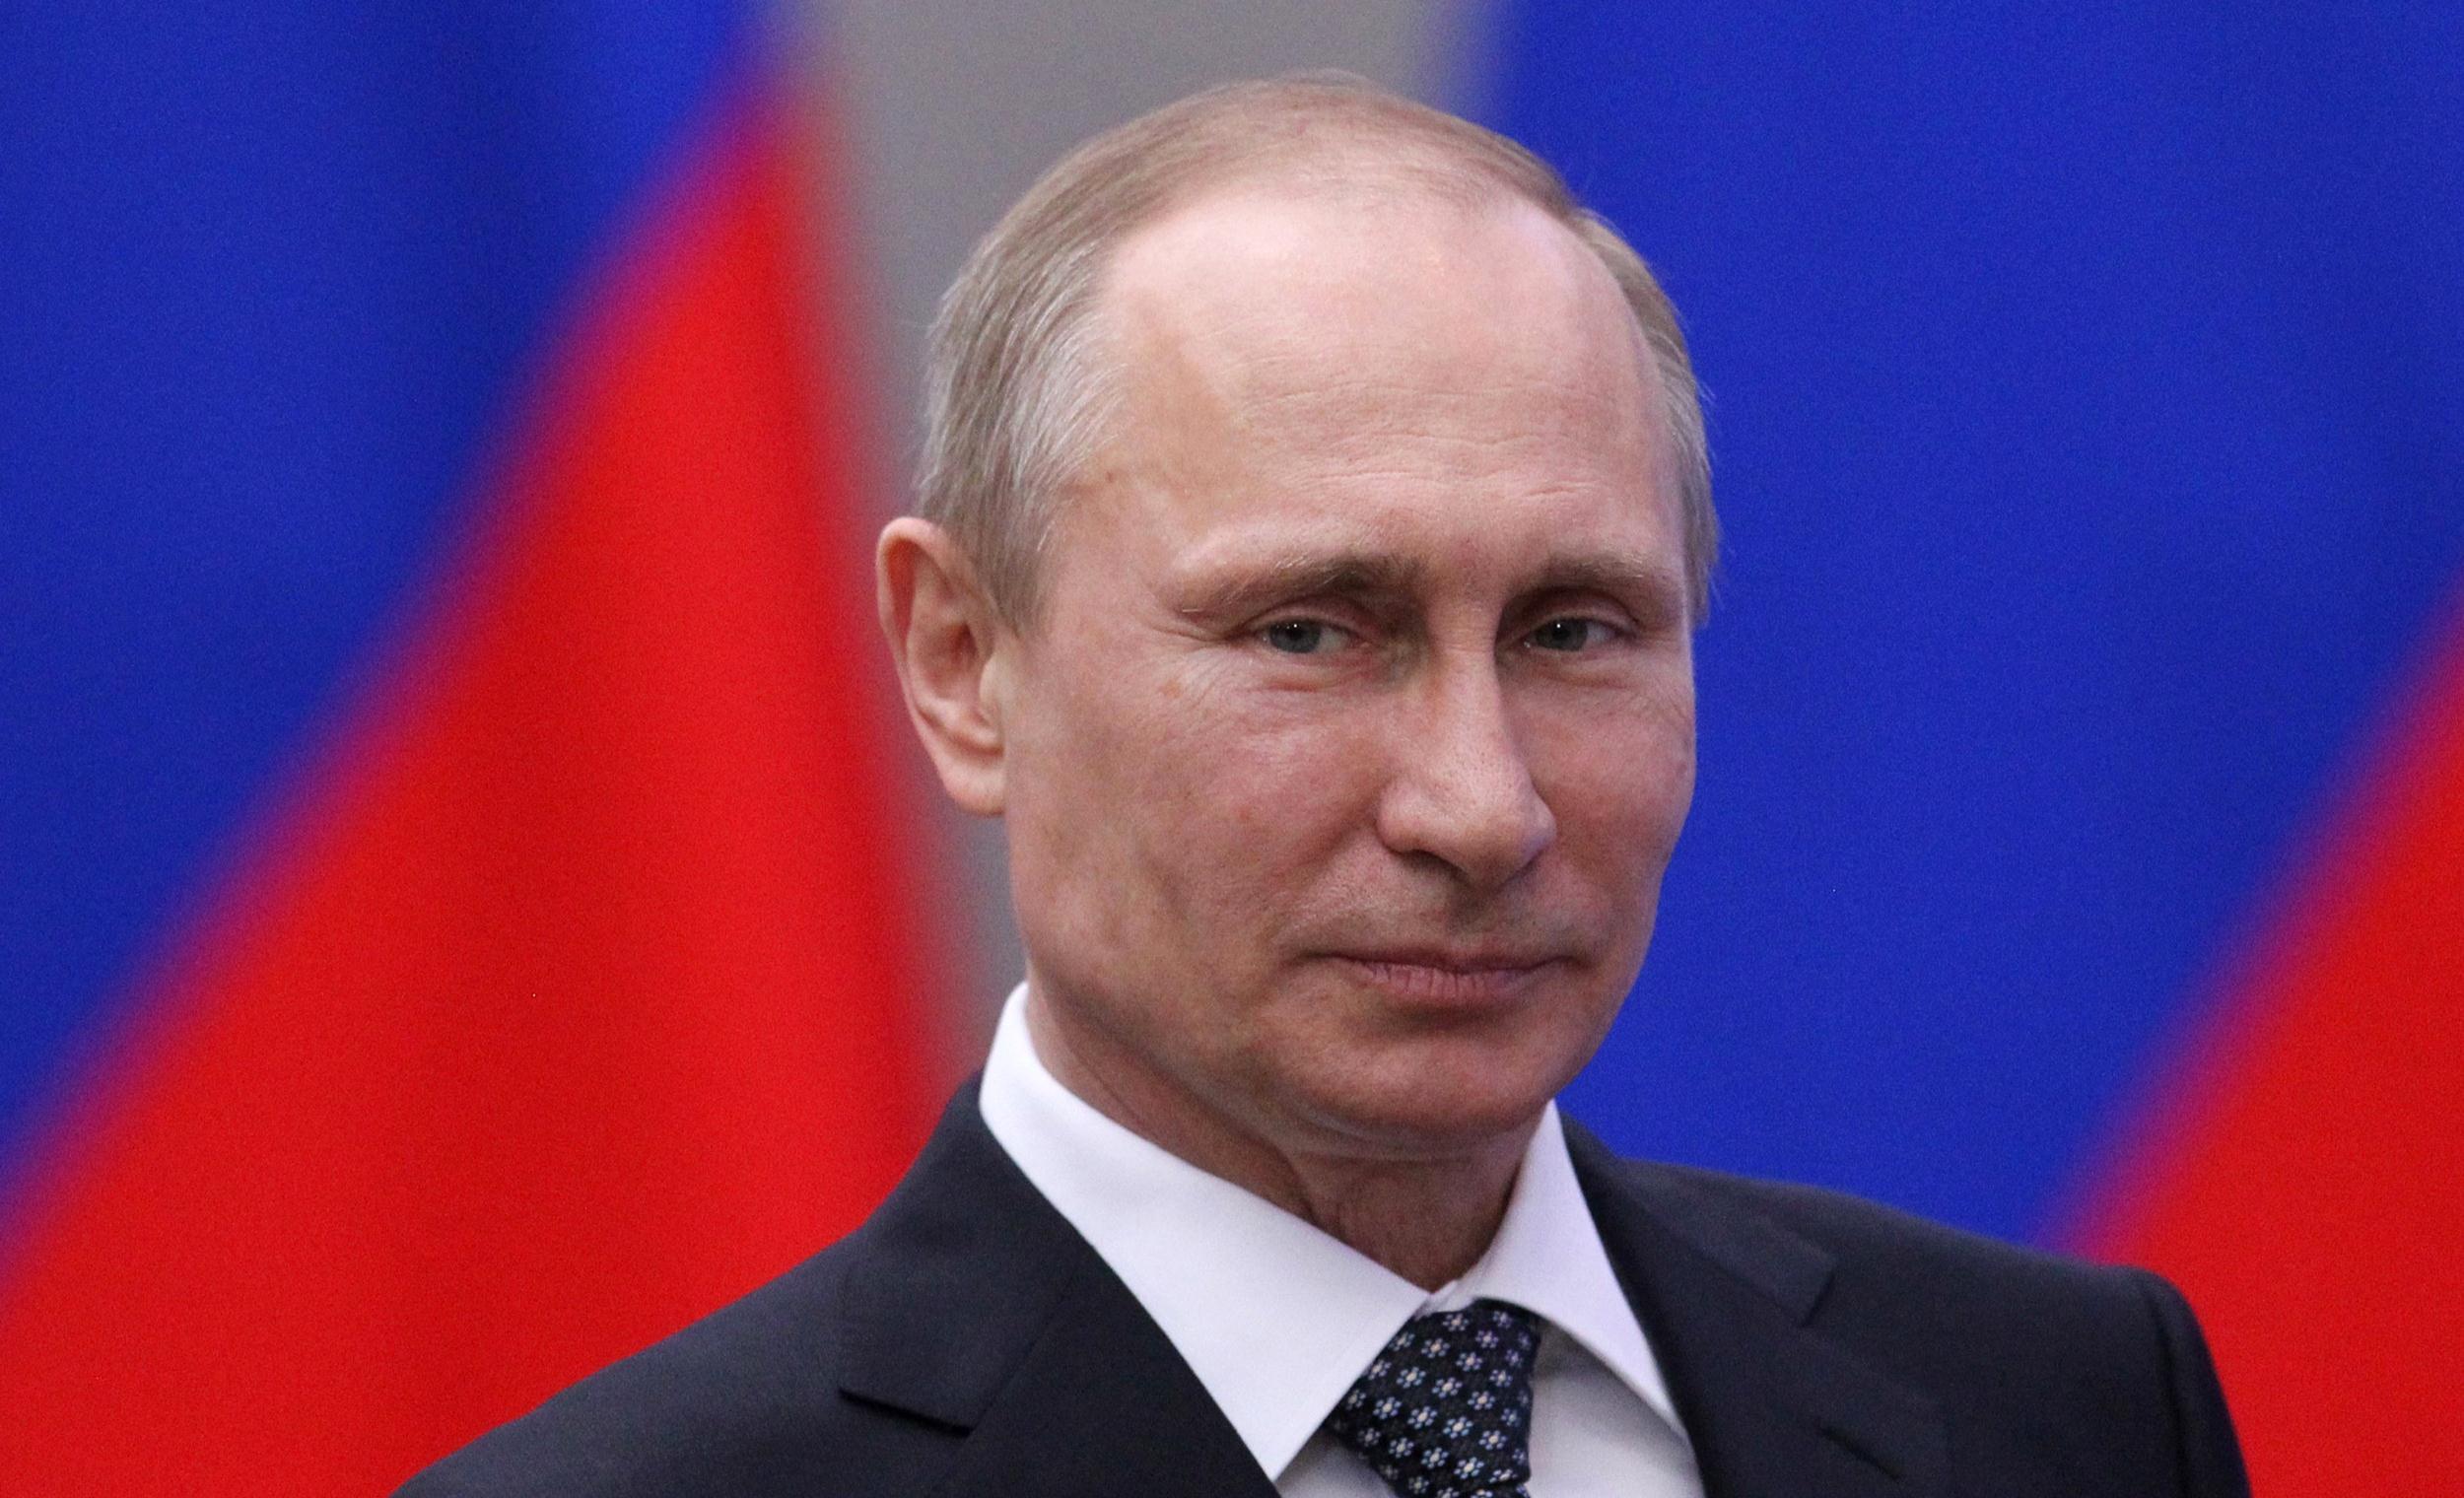 最新民调结果显示俄罗斯总统普京支持率居高不下